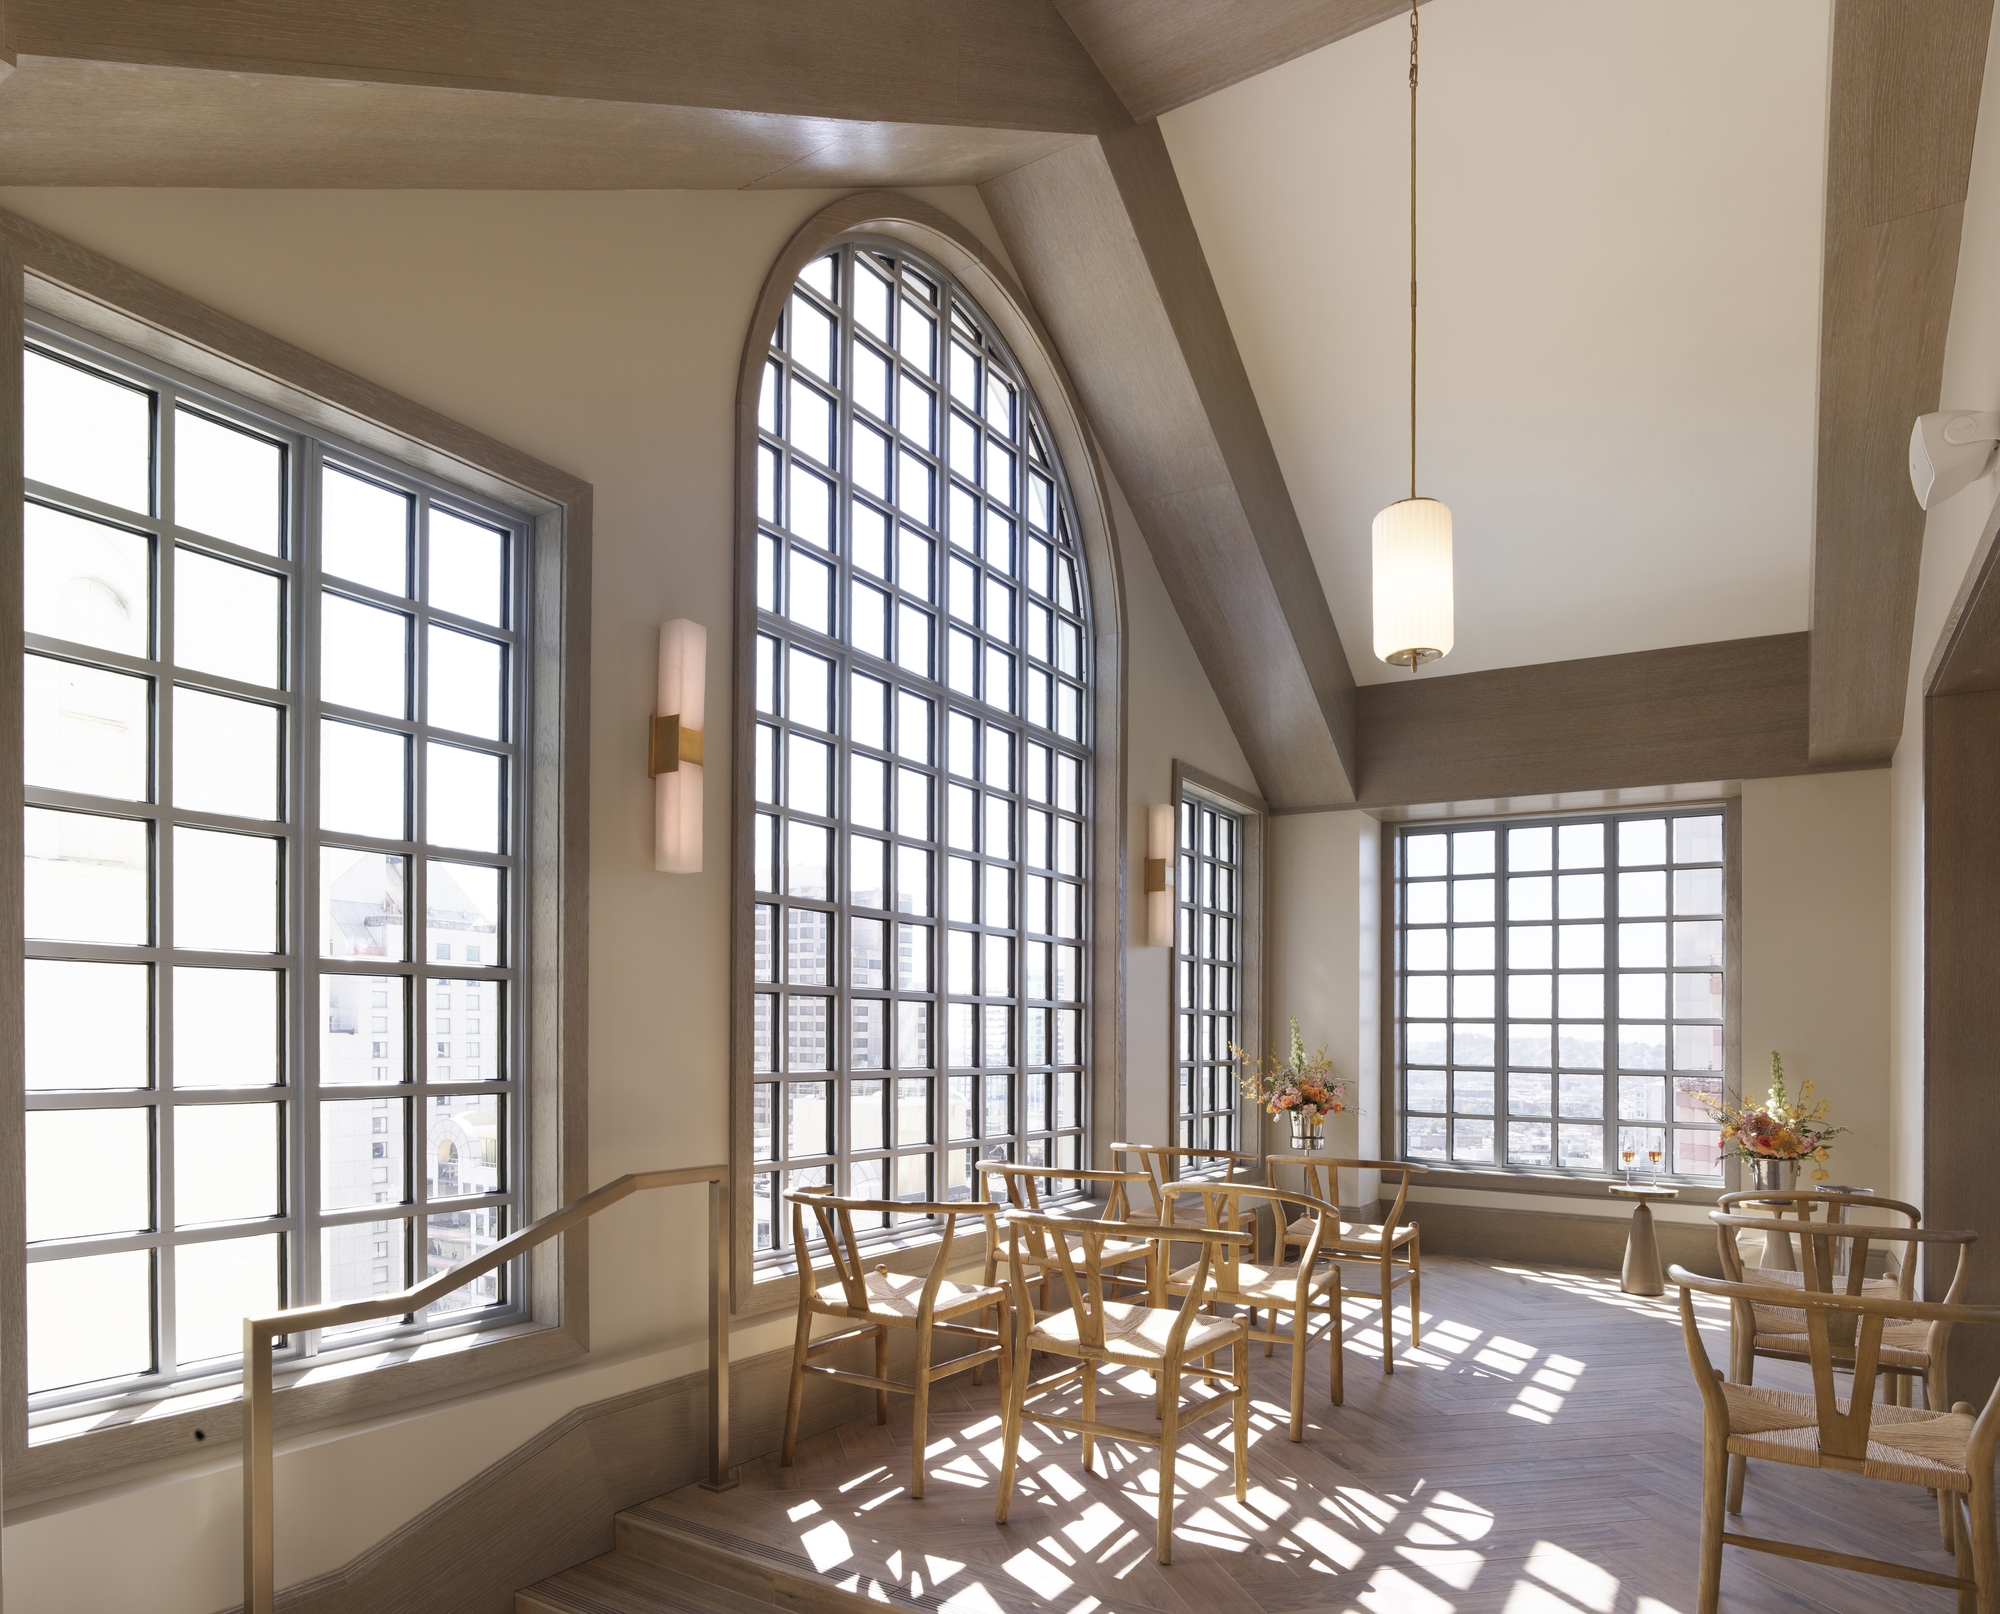 图片[9]|克利夫特皇家索尼斯塔酒店|ART-Arrakis | 建筑室内设计的创新与灵感